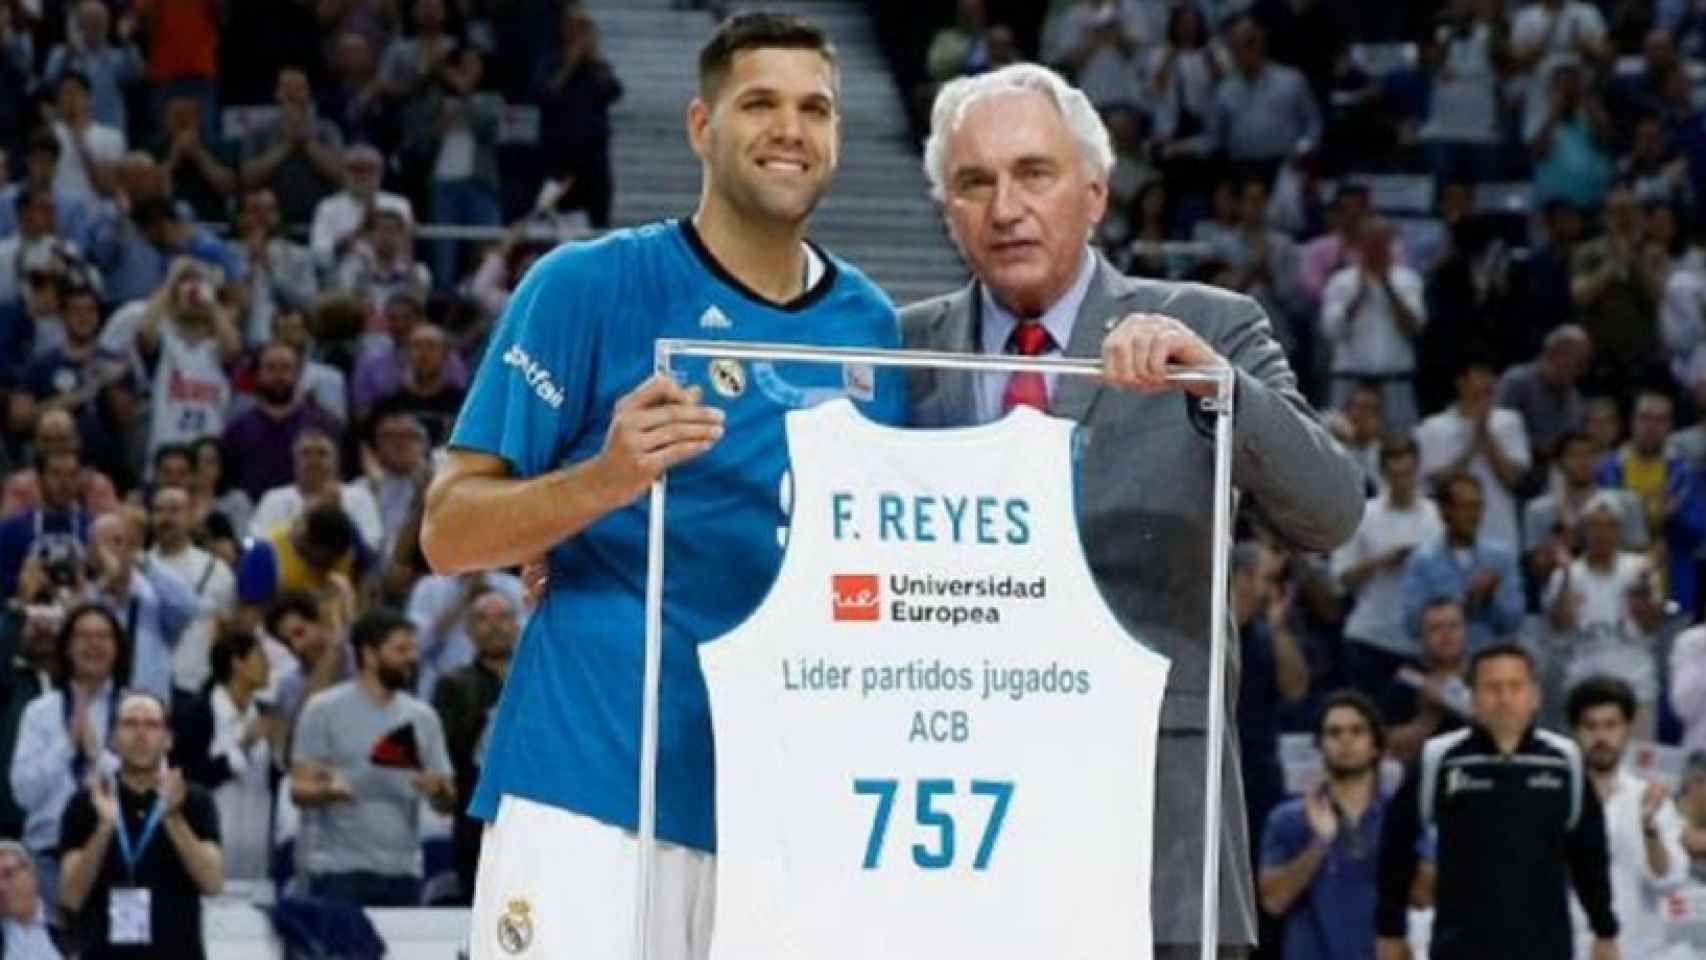 Felipe Reyes, homenajeado por sus 757 partidos en la ACB.